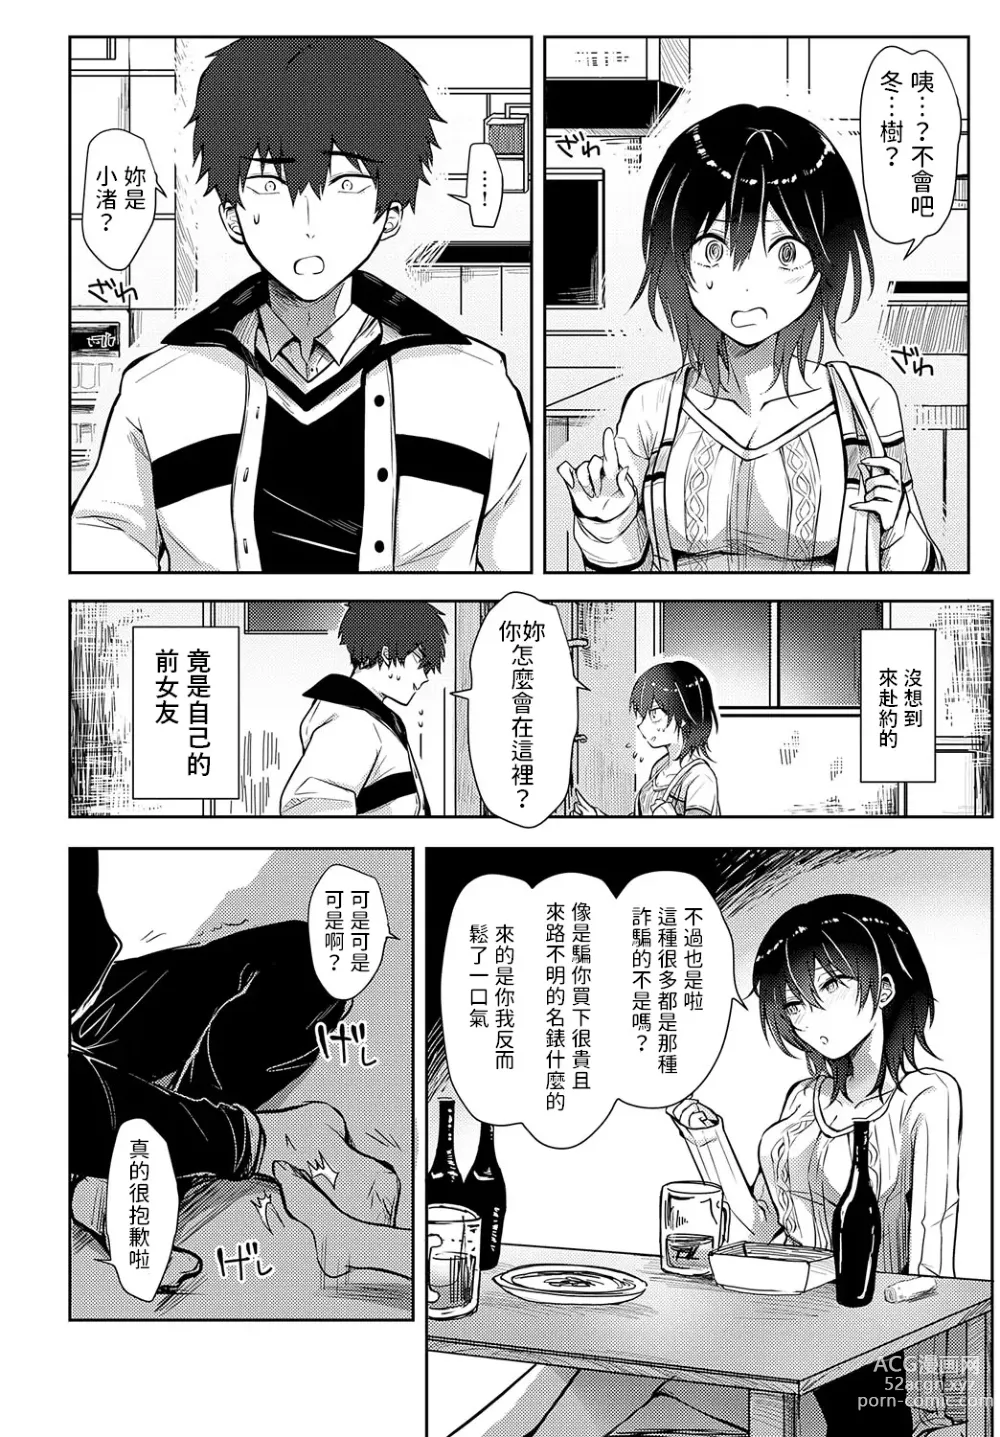 Page 2 of manga Kirei ni Natta Kimi ni Yoishirete